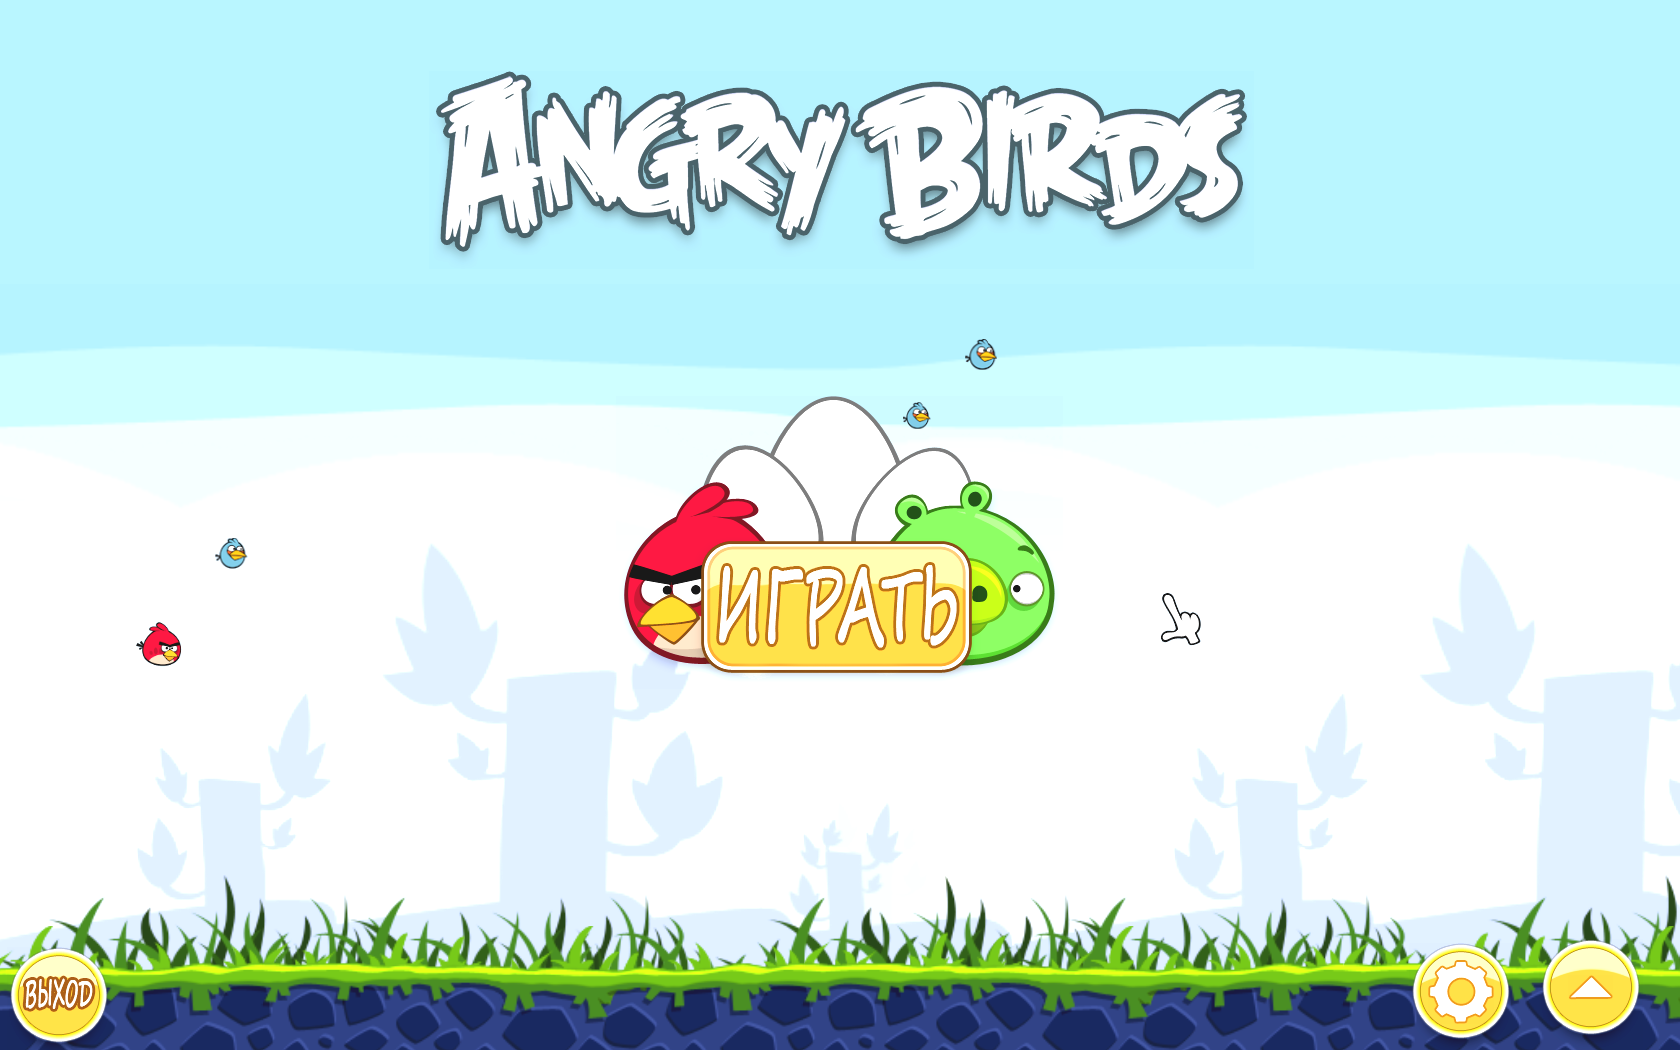 Игра енгрибердс. Angry Birds 1 игра. Энгри бердз игра первая версия. Игра злые птички Classic. Angry Birds версия 1.6.3.